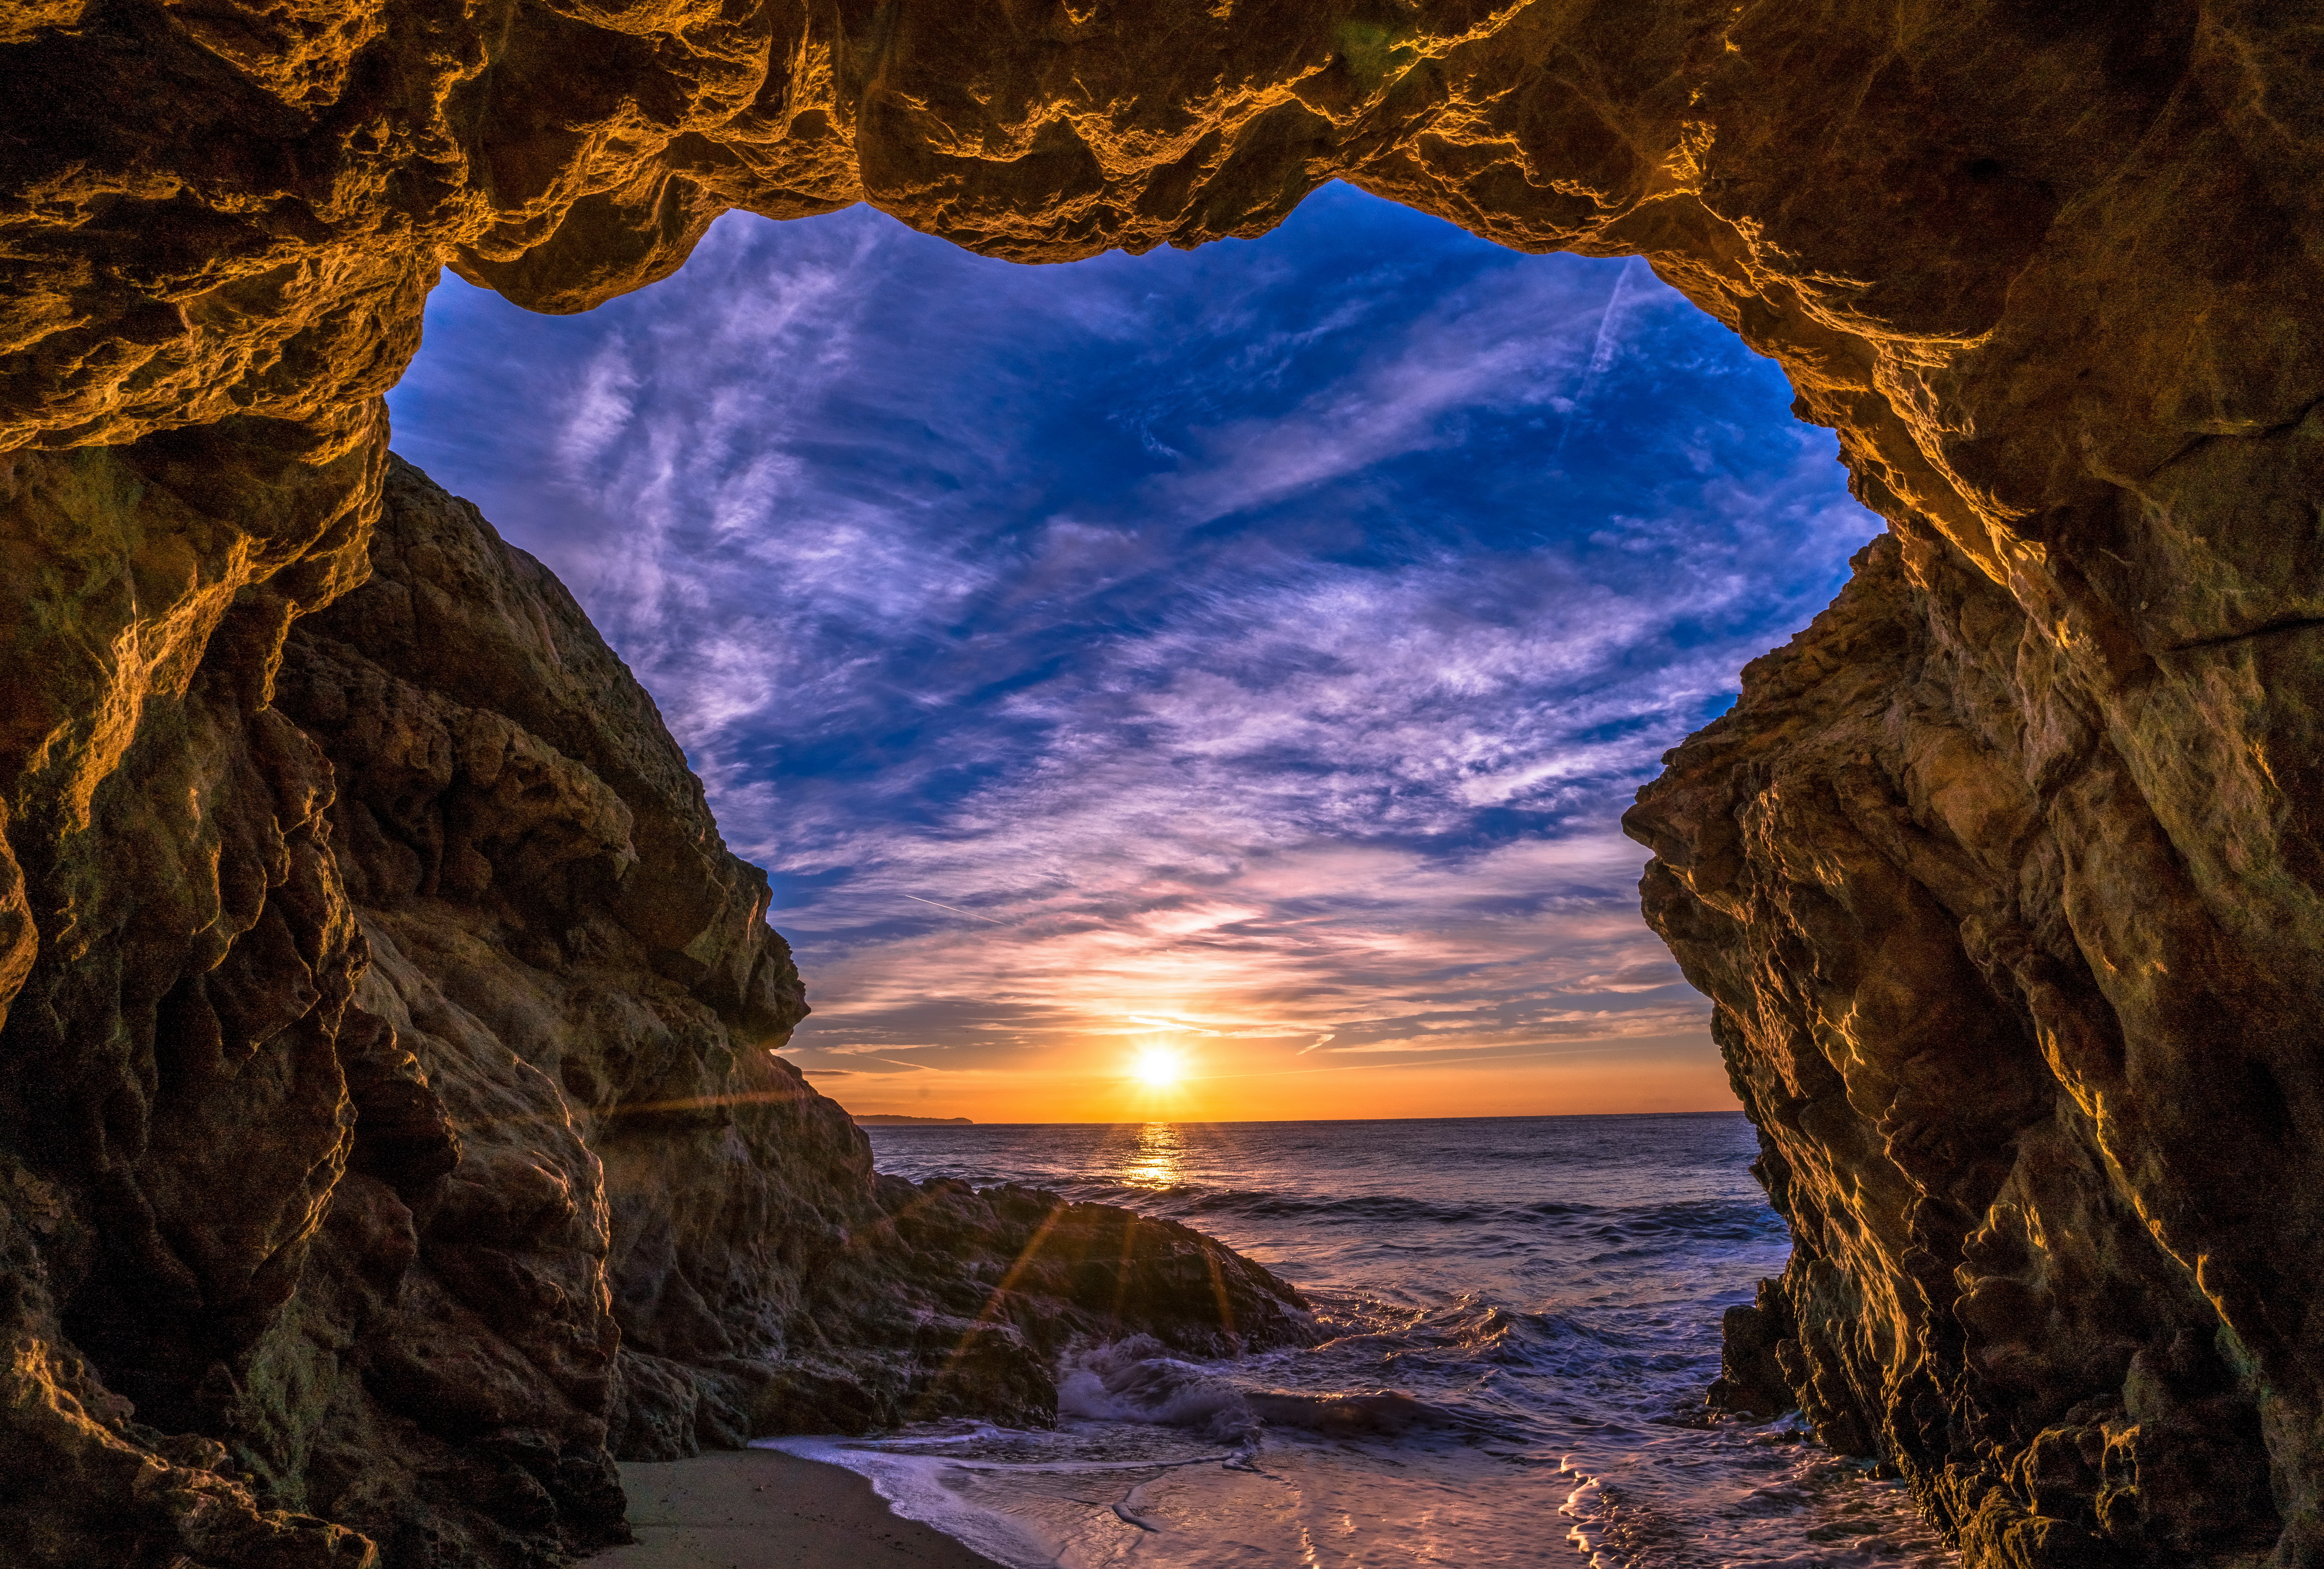 Beach Cave in Malibu, California